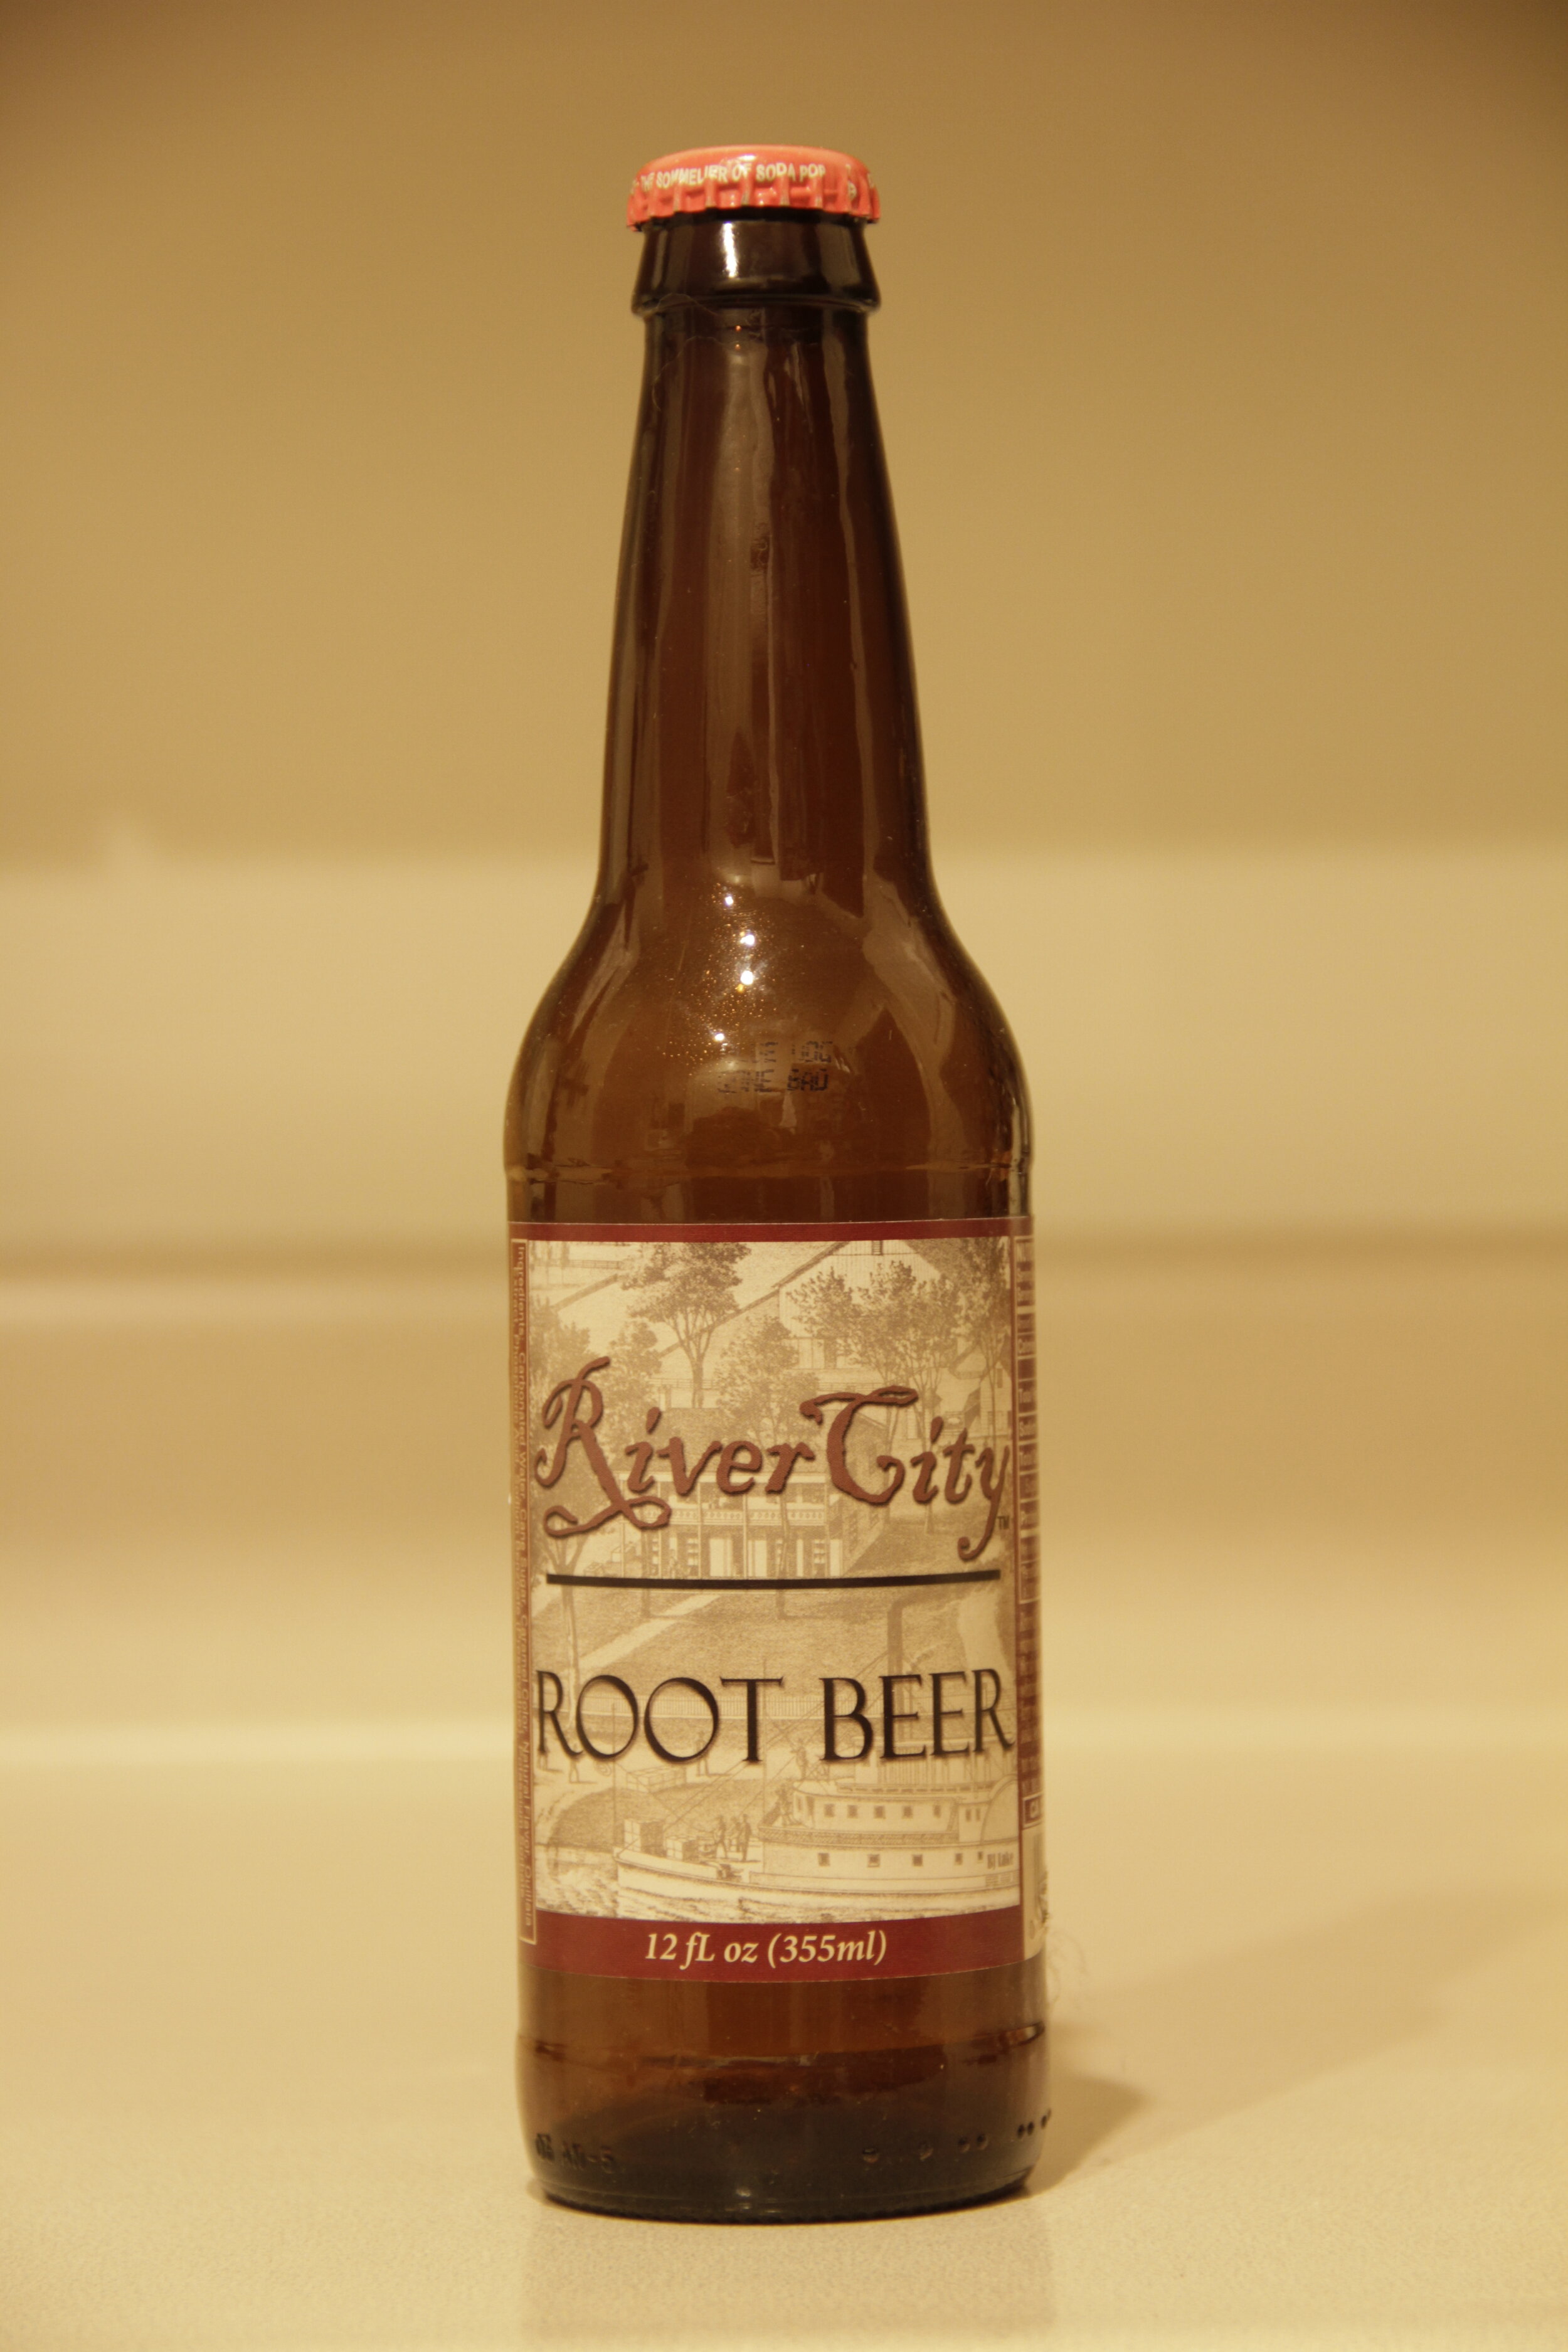 River City (bottle).JPG